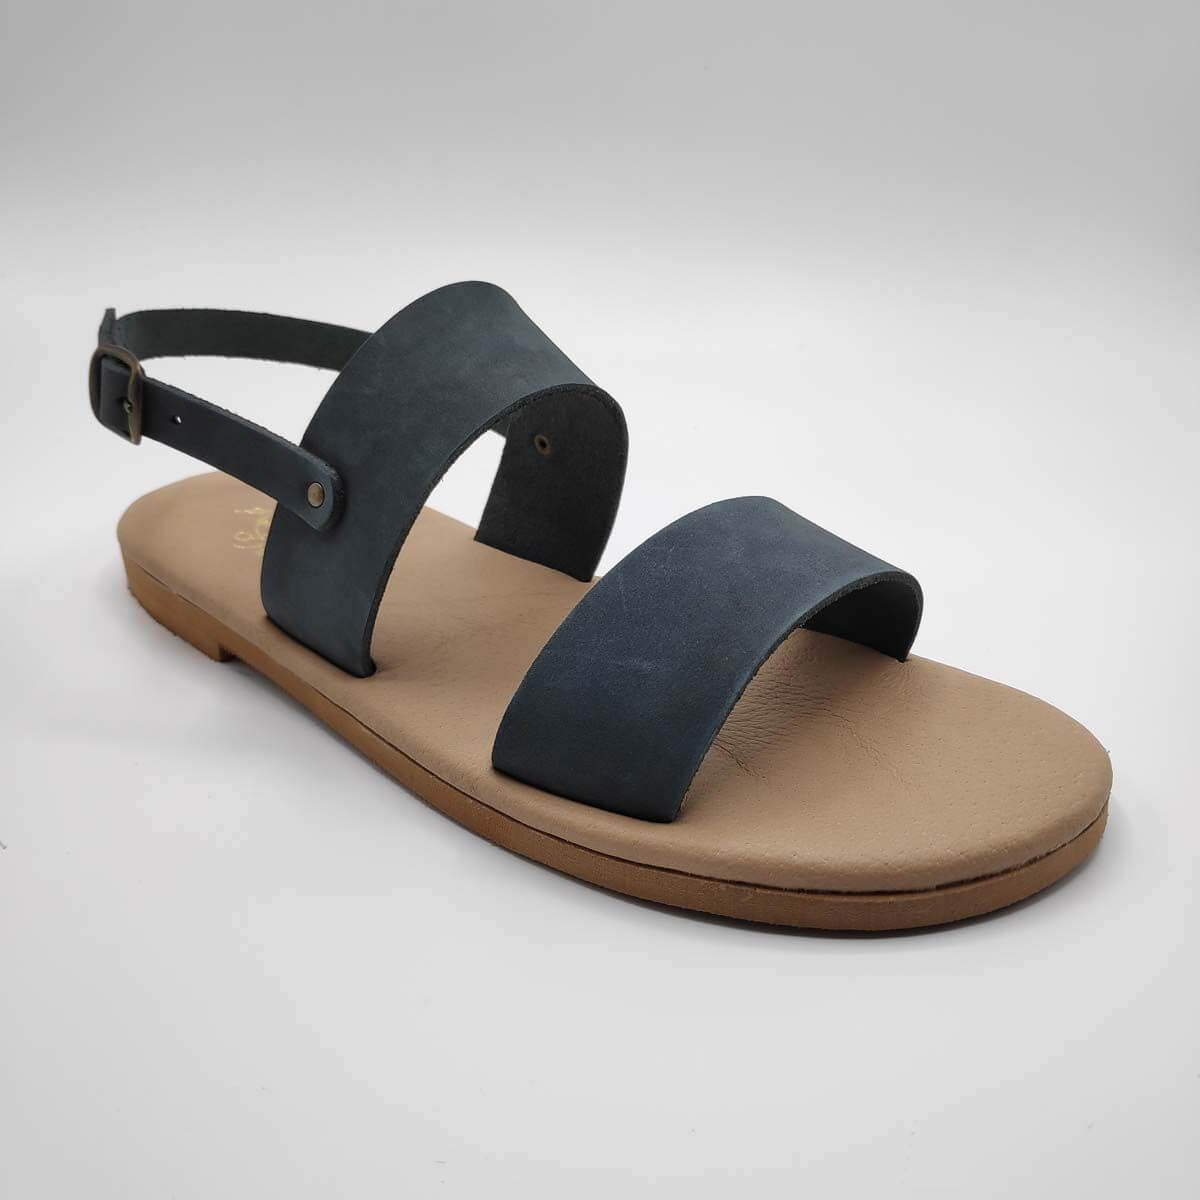 sandals 2 straps